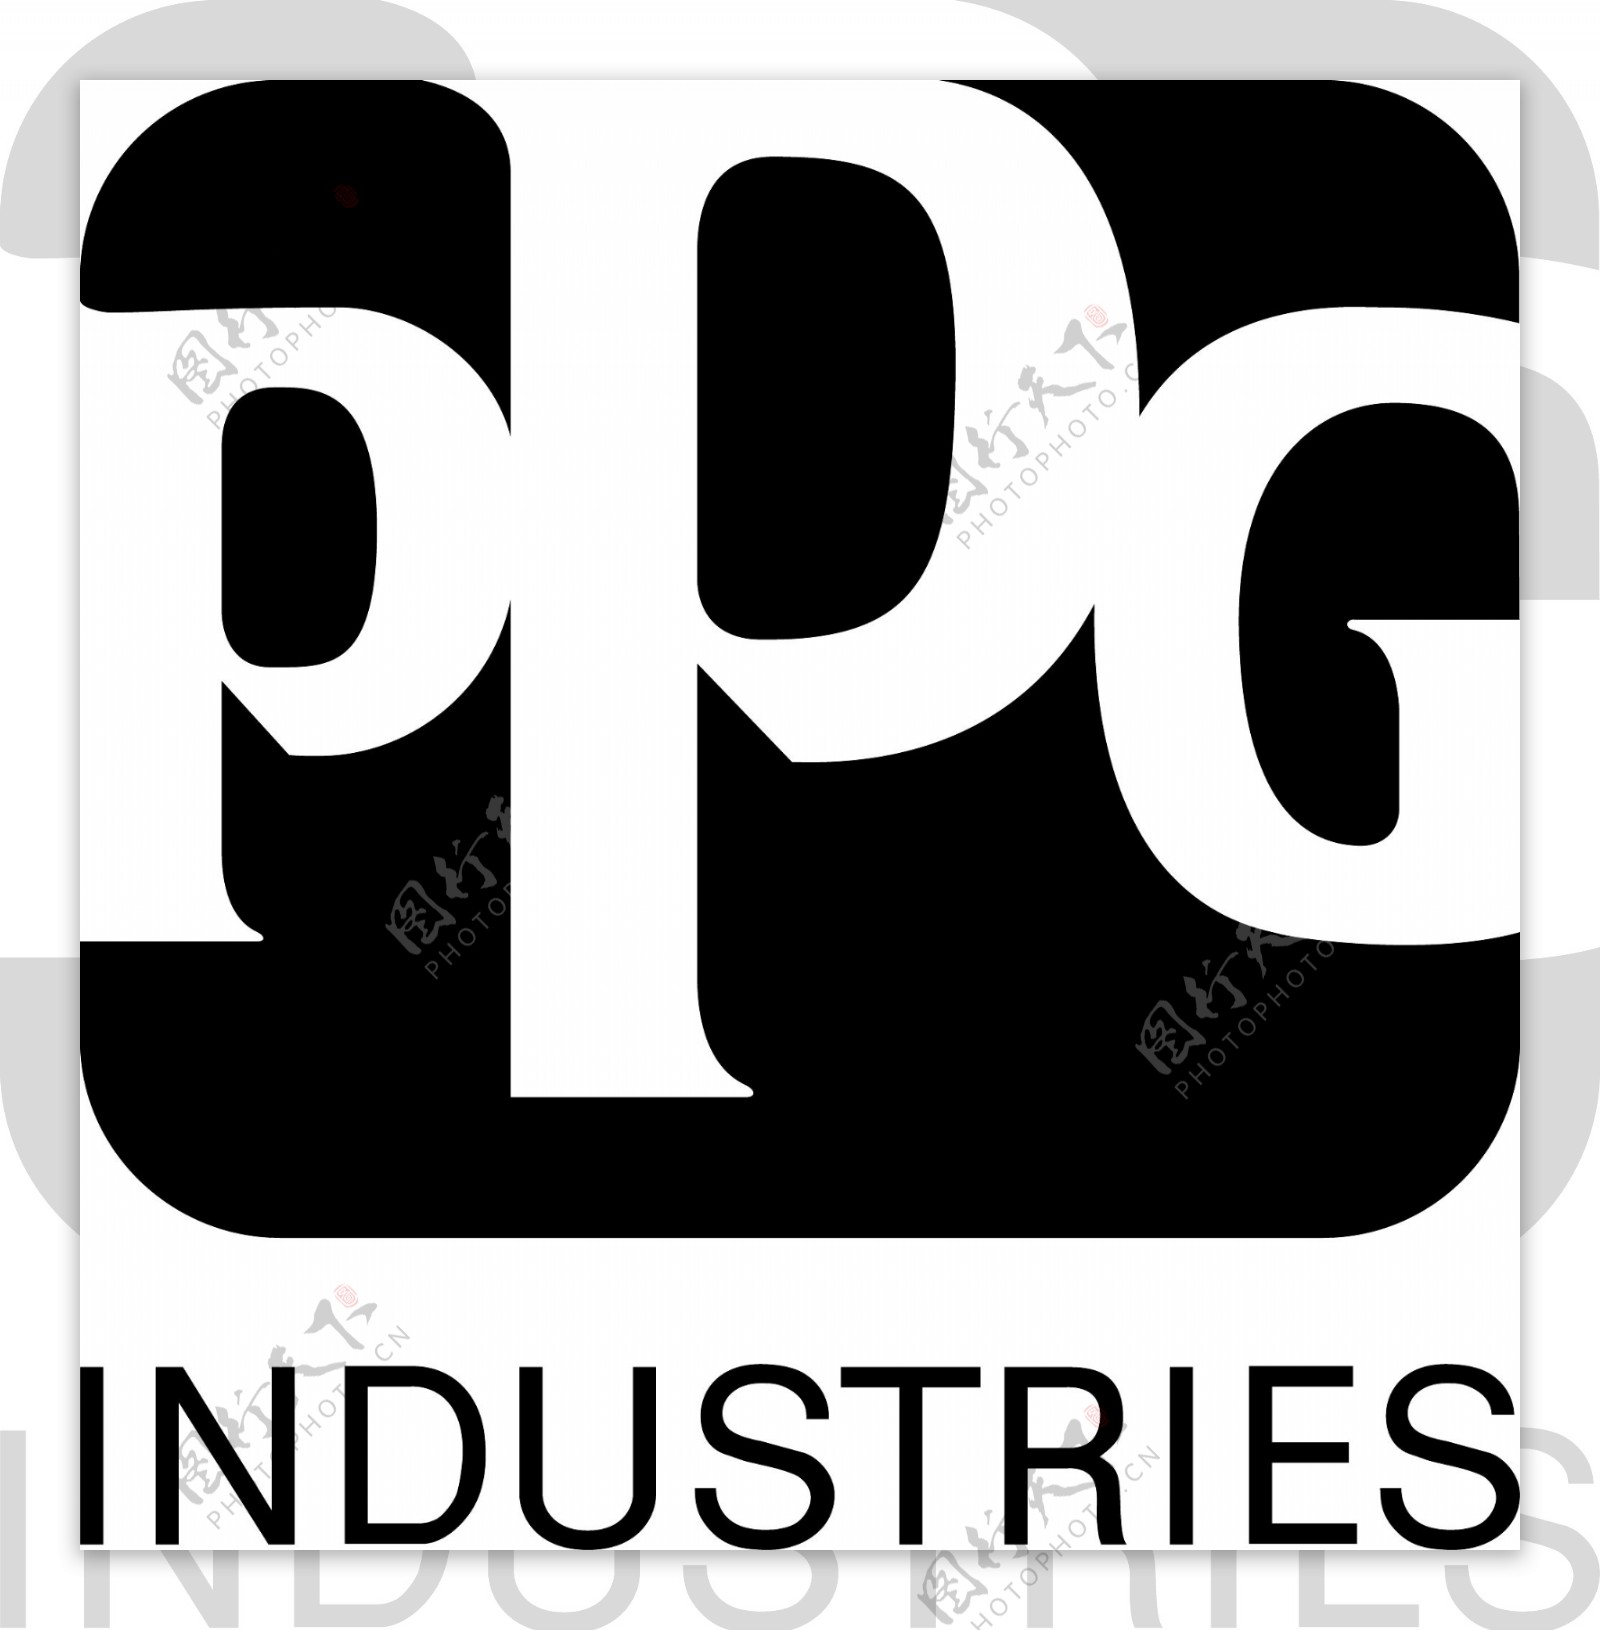 PPG工业标志